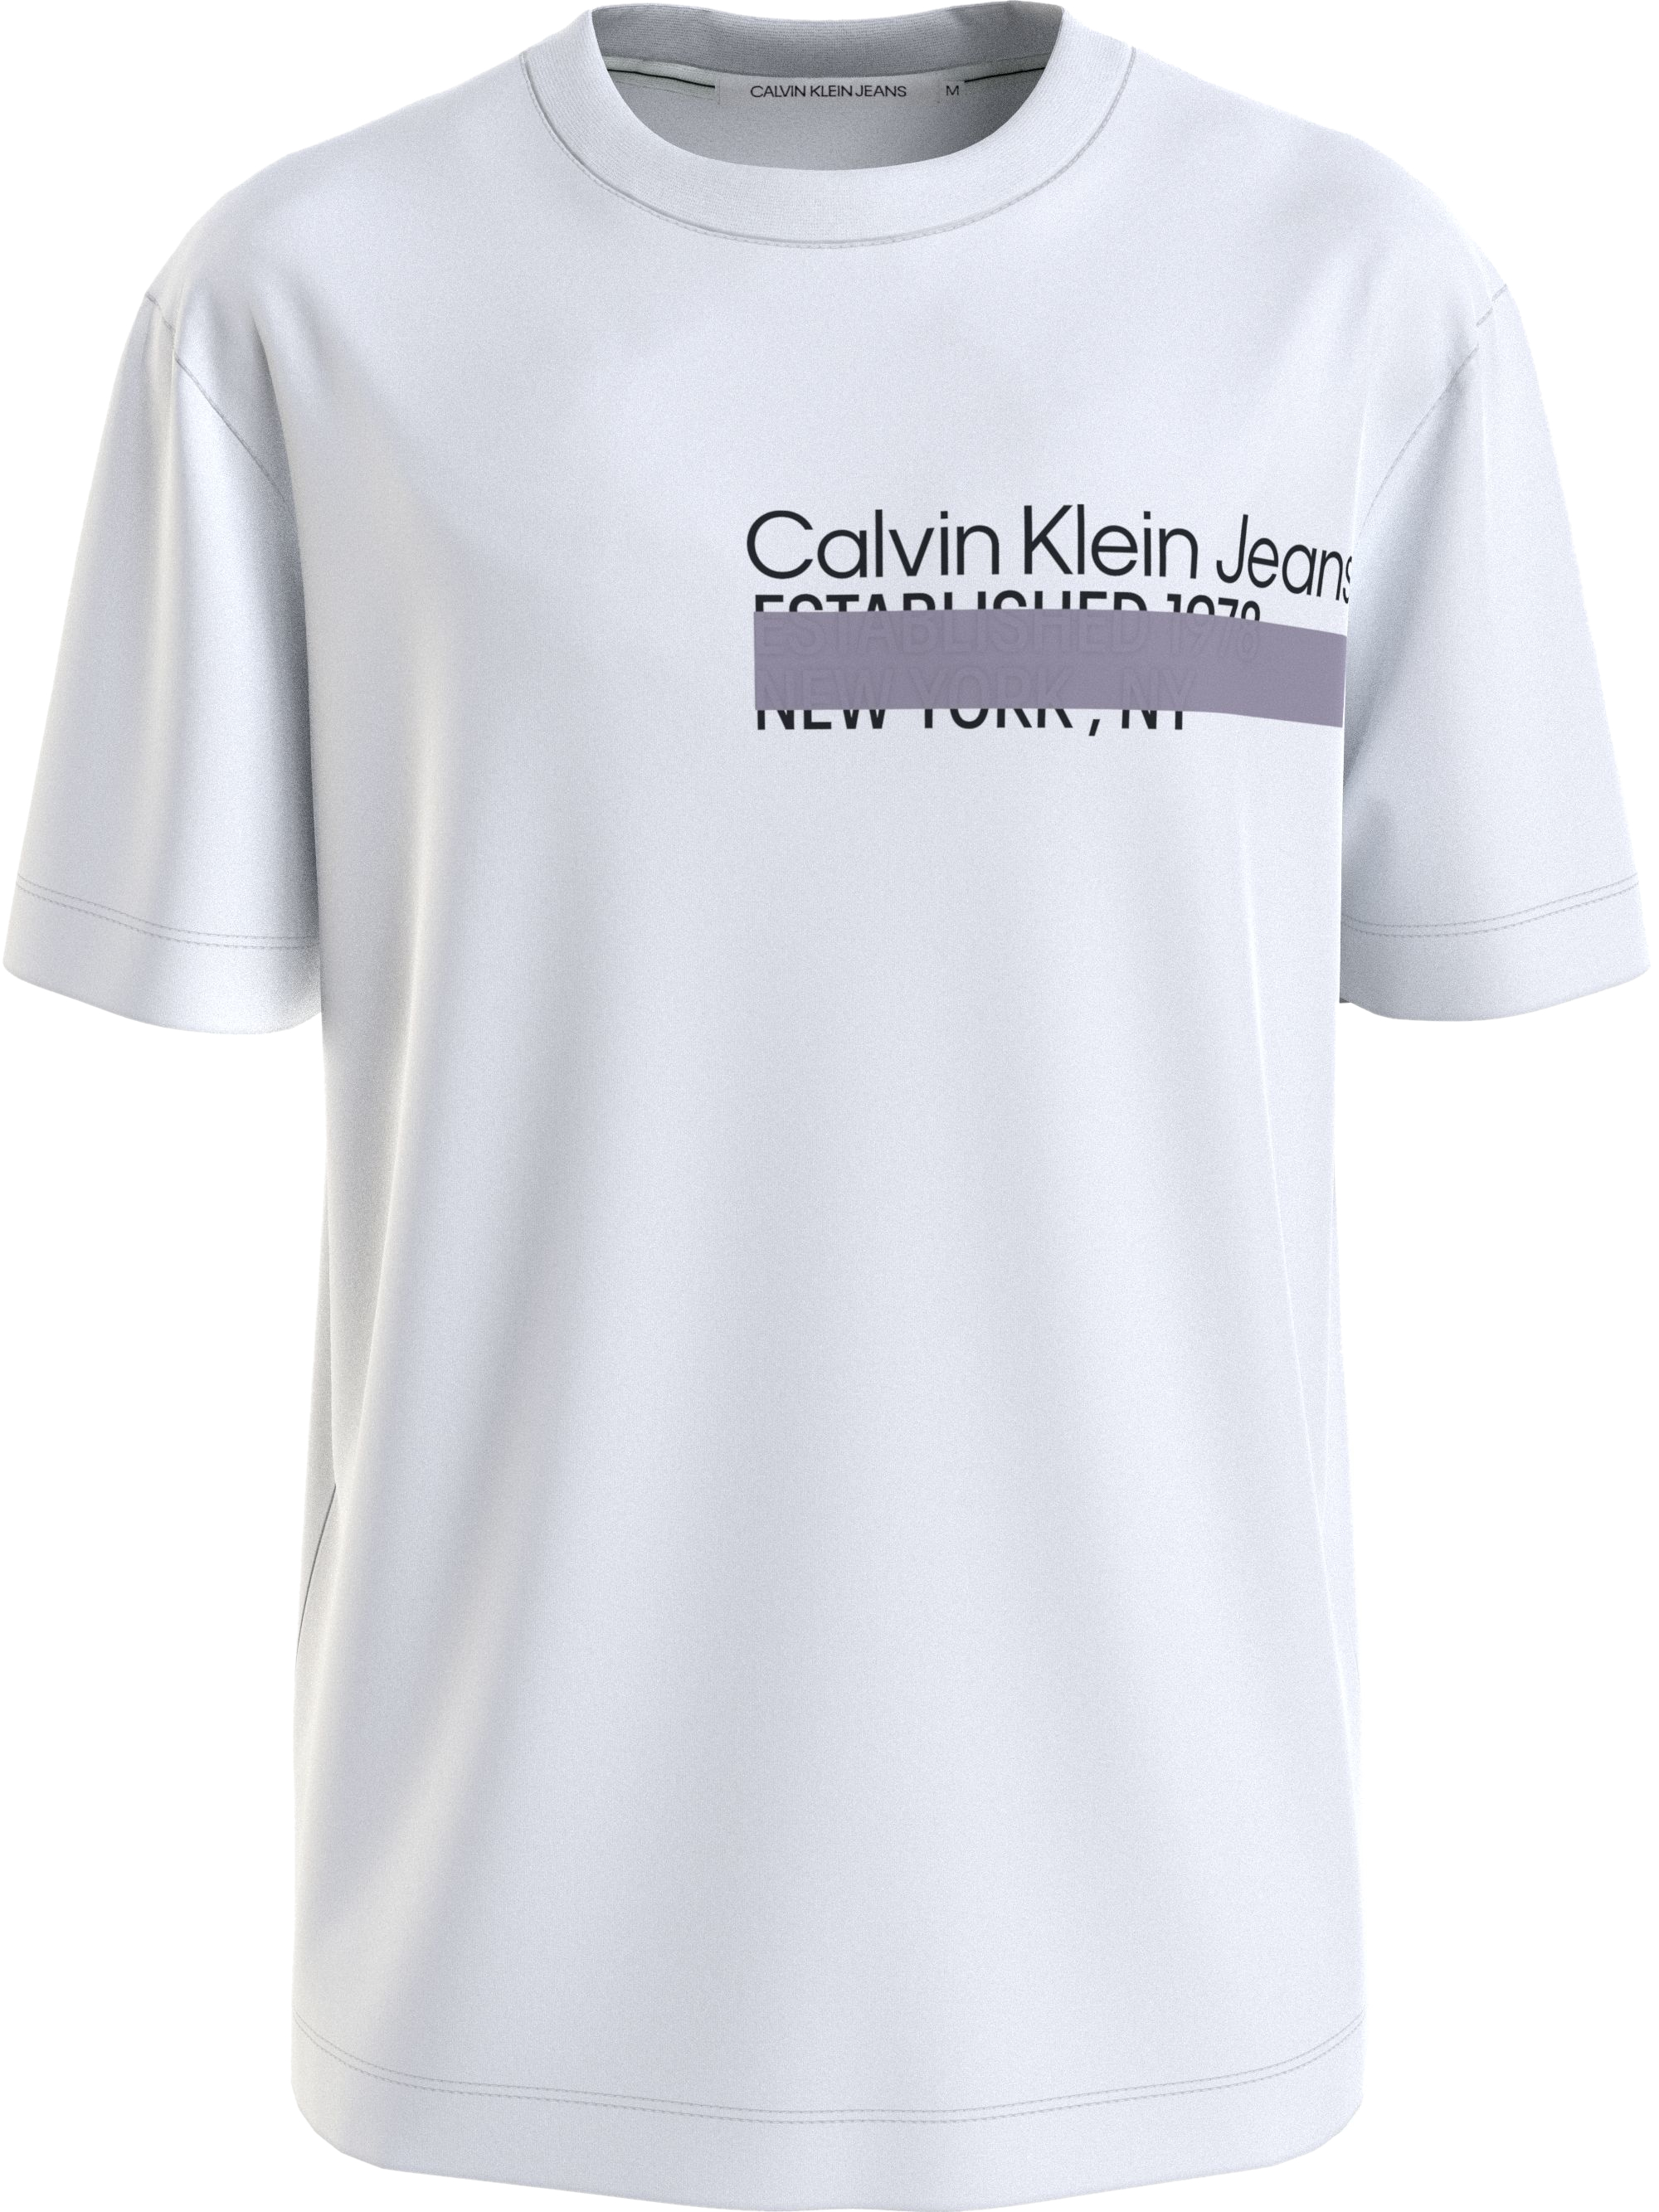 Camiseta Calvin Klein Estampada Masculina